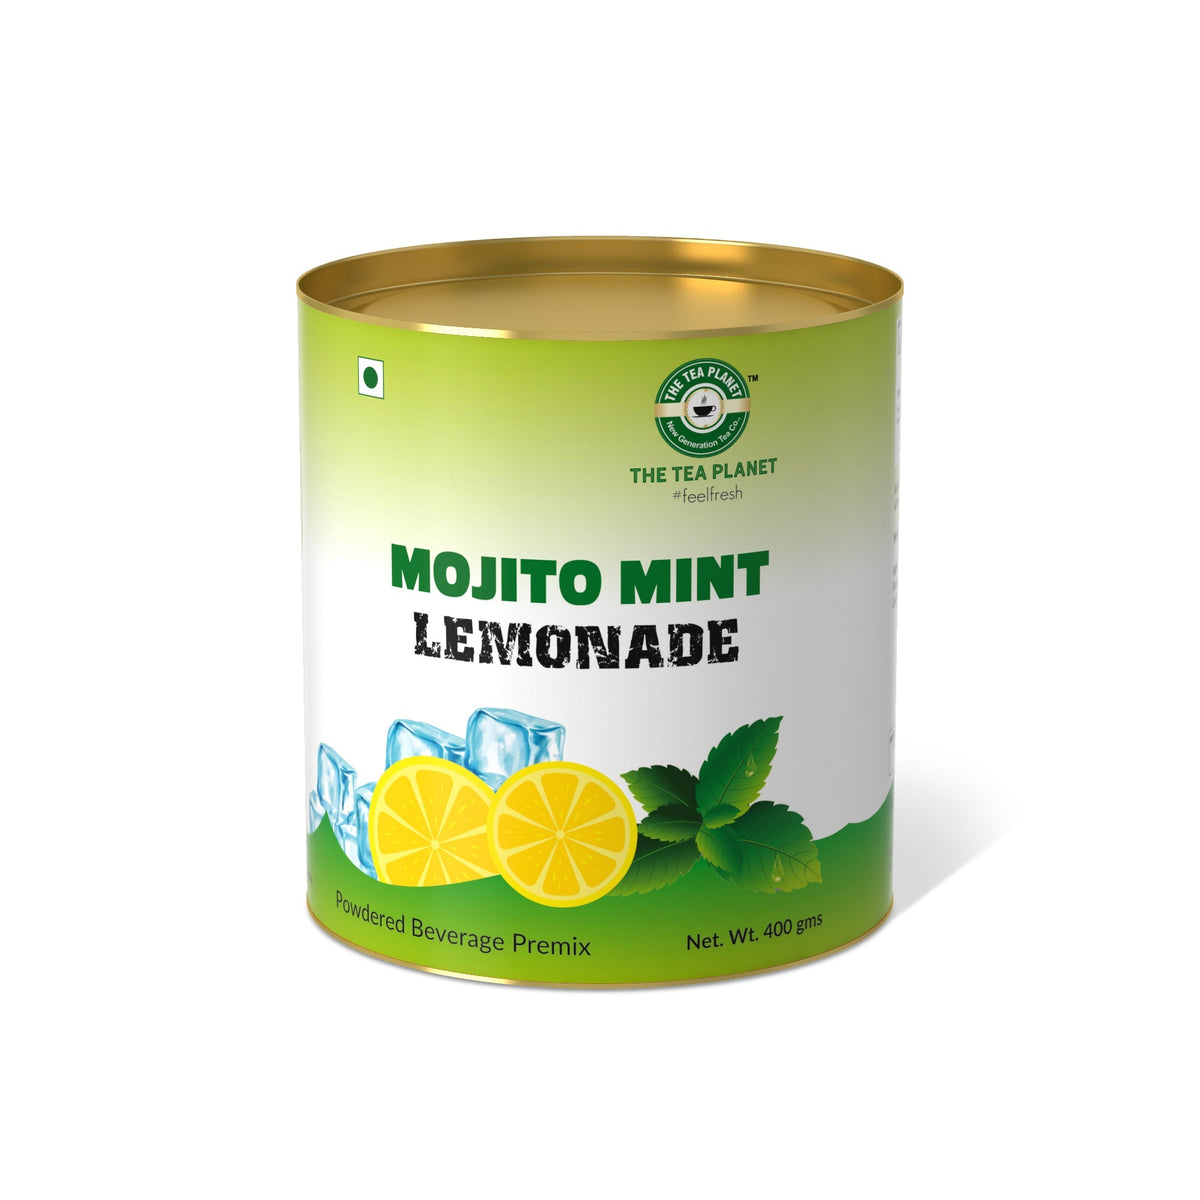 Mojito Mint Lemonade Premix - 400 gms